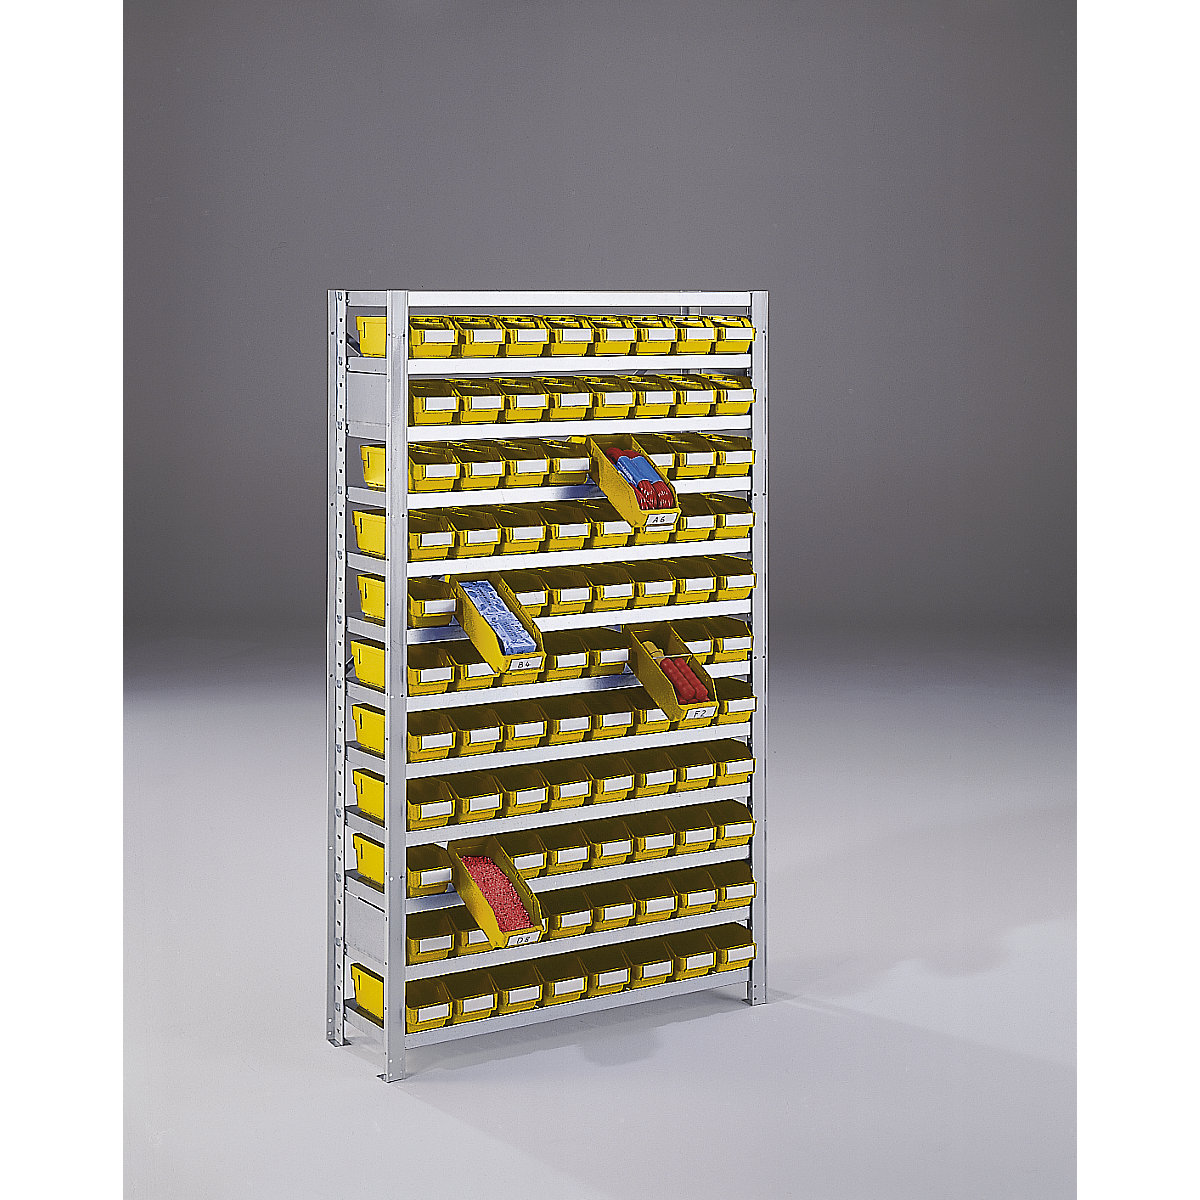 Összedugaszolós állvány dobozokkal – STEMO, állványmagasság 1790 mm, bővítő állvány, 300 mm mély, 88 sárga doboz-12